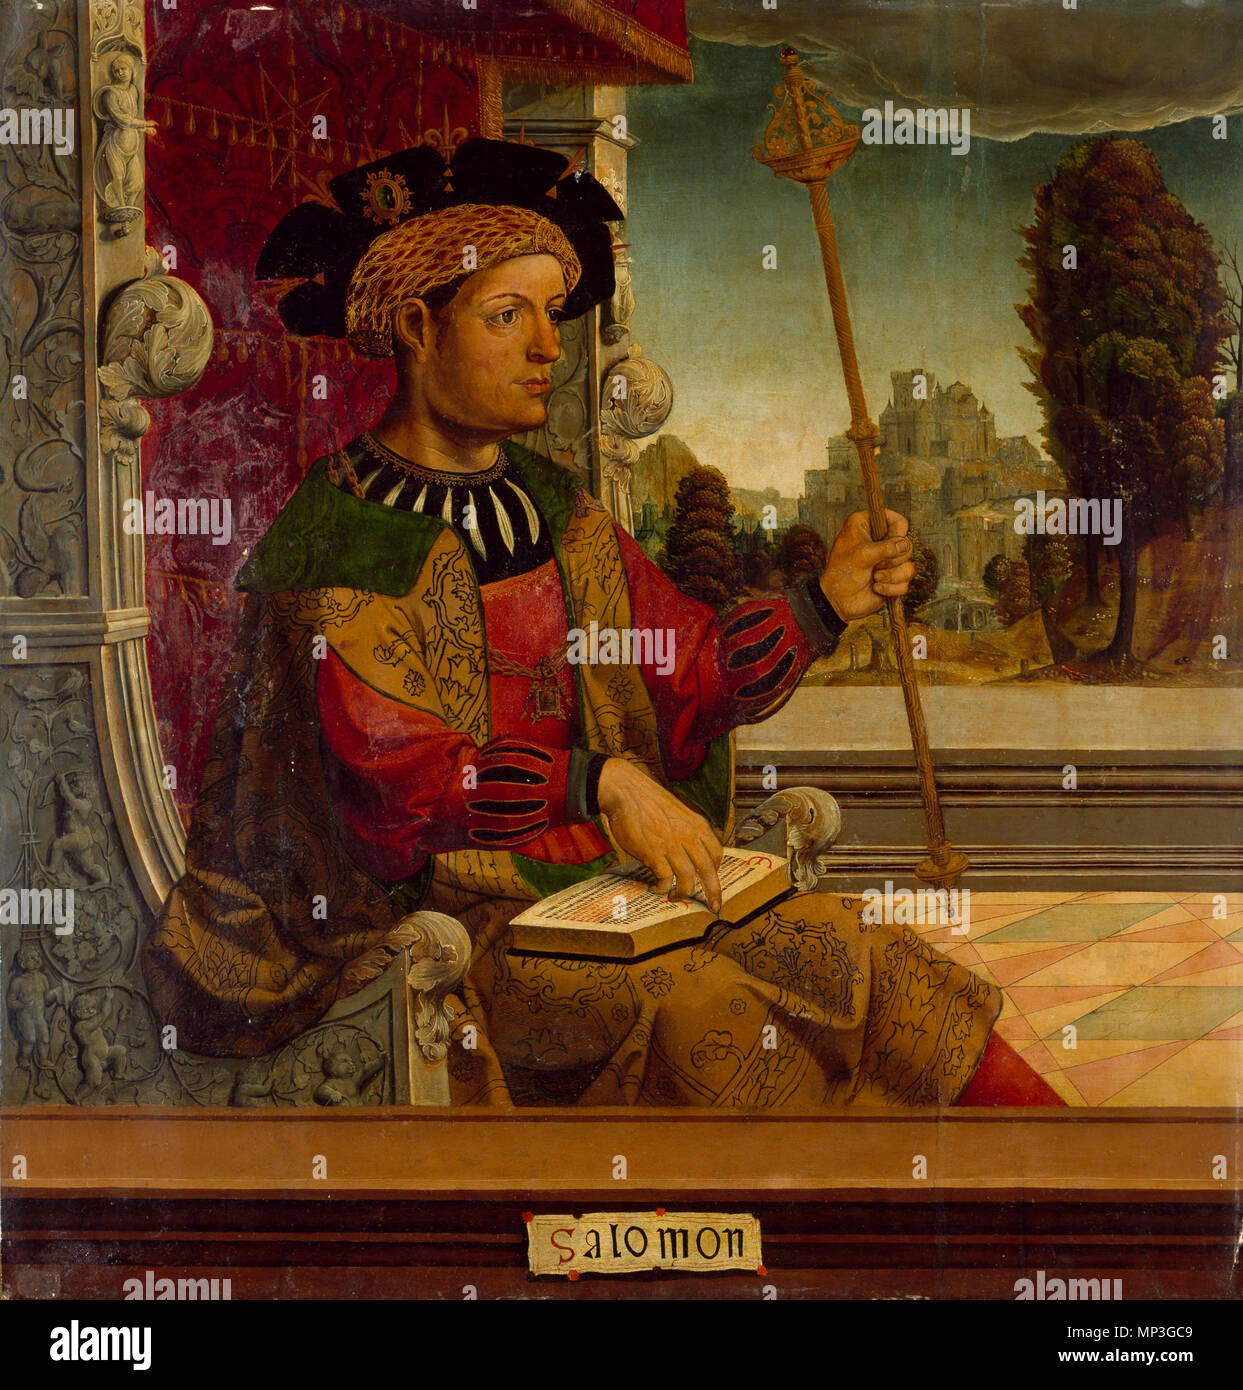 Español: Salomón, óleo sobre tabla, 90,8 x 87,7 cm, Madrid, Museo del Prado  . circa 1535. Maestro de Becerril 842 Maestro de becerril-salomon-prado  Stock Photo - Alamy